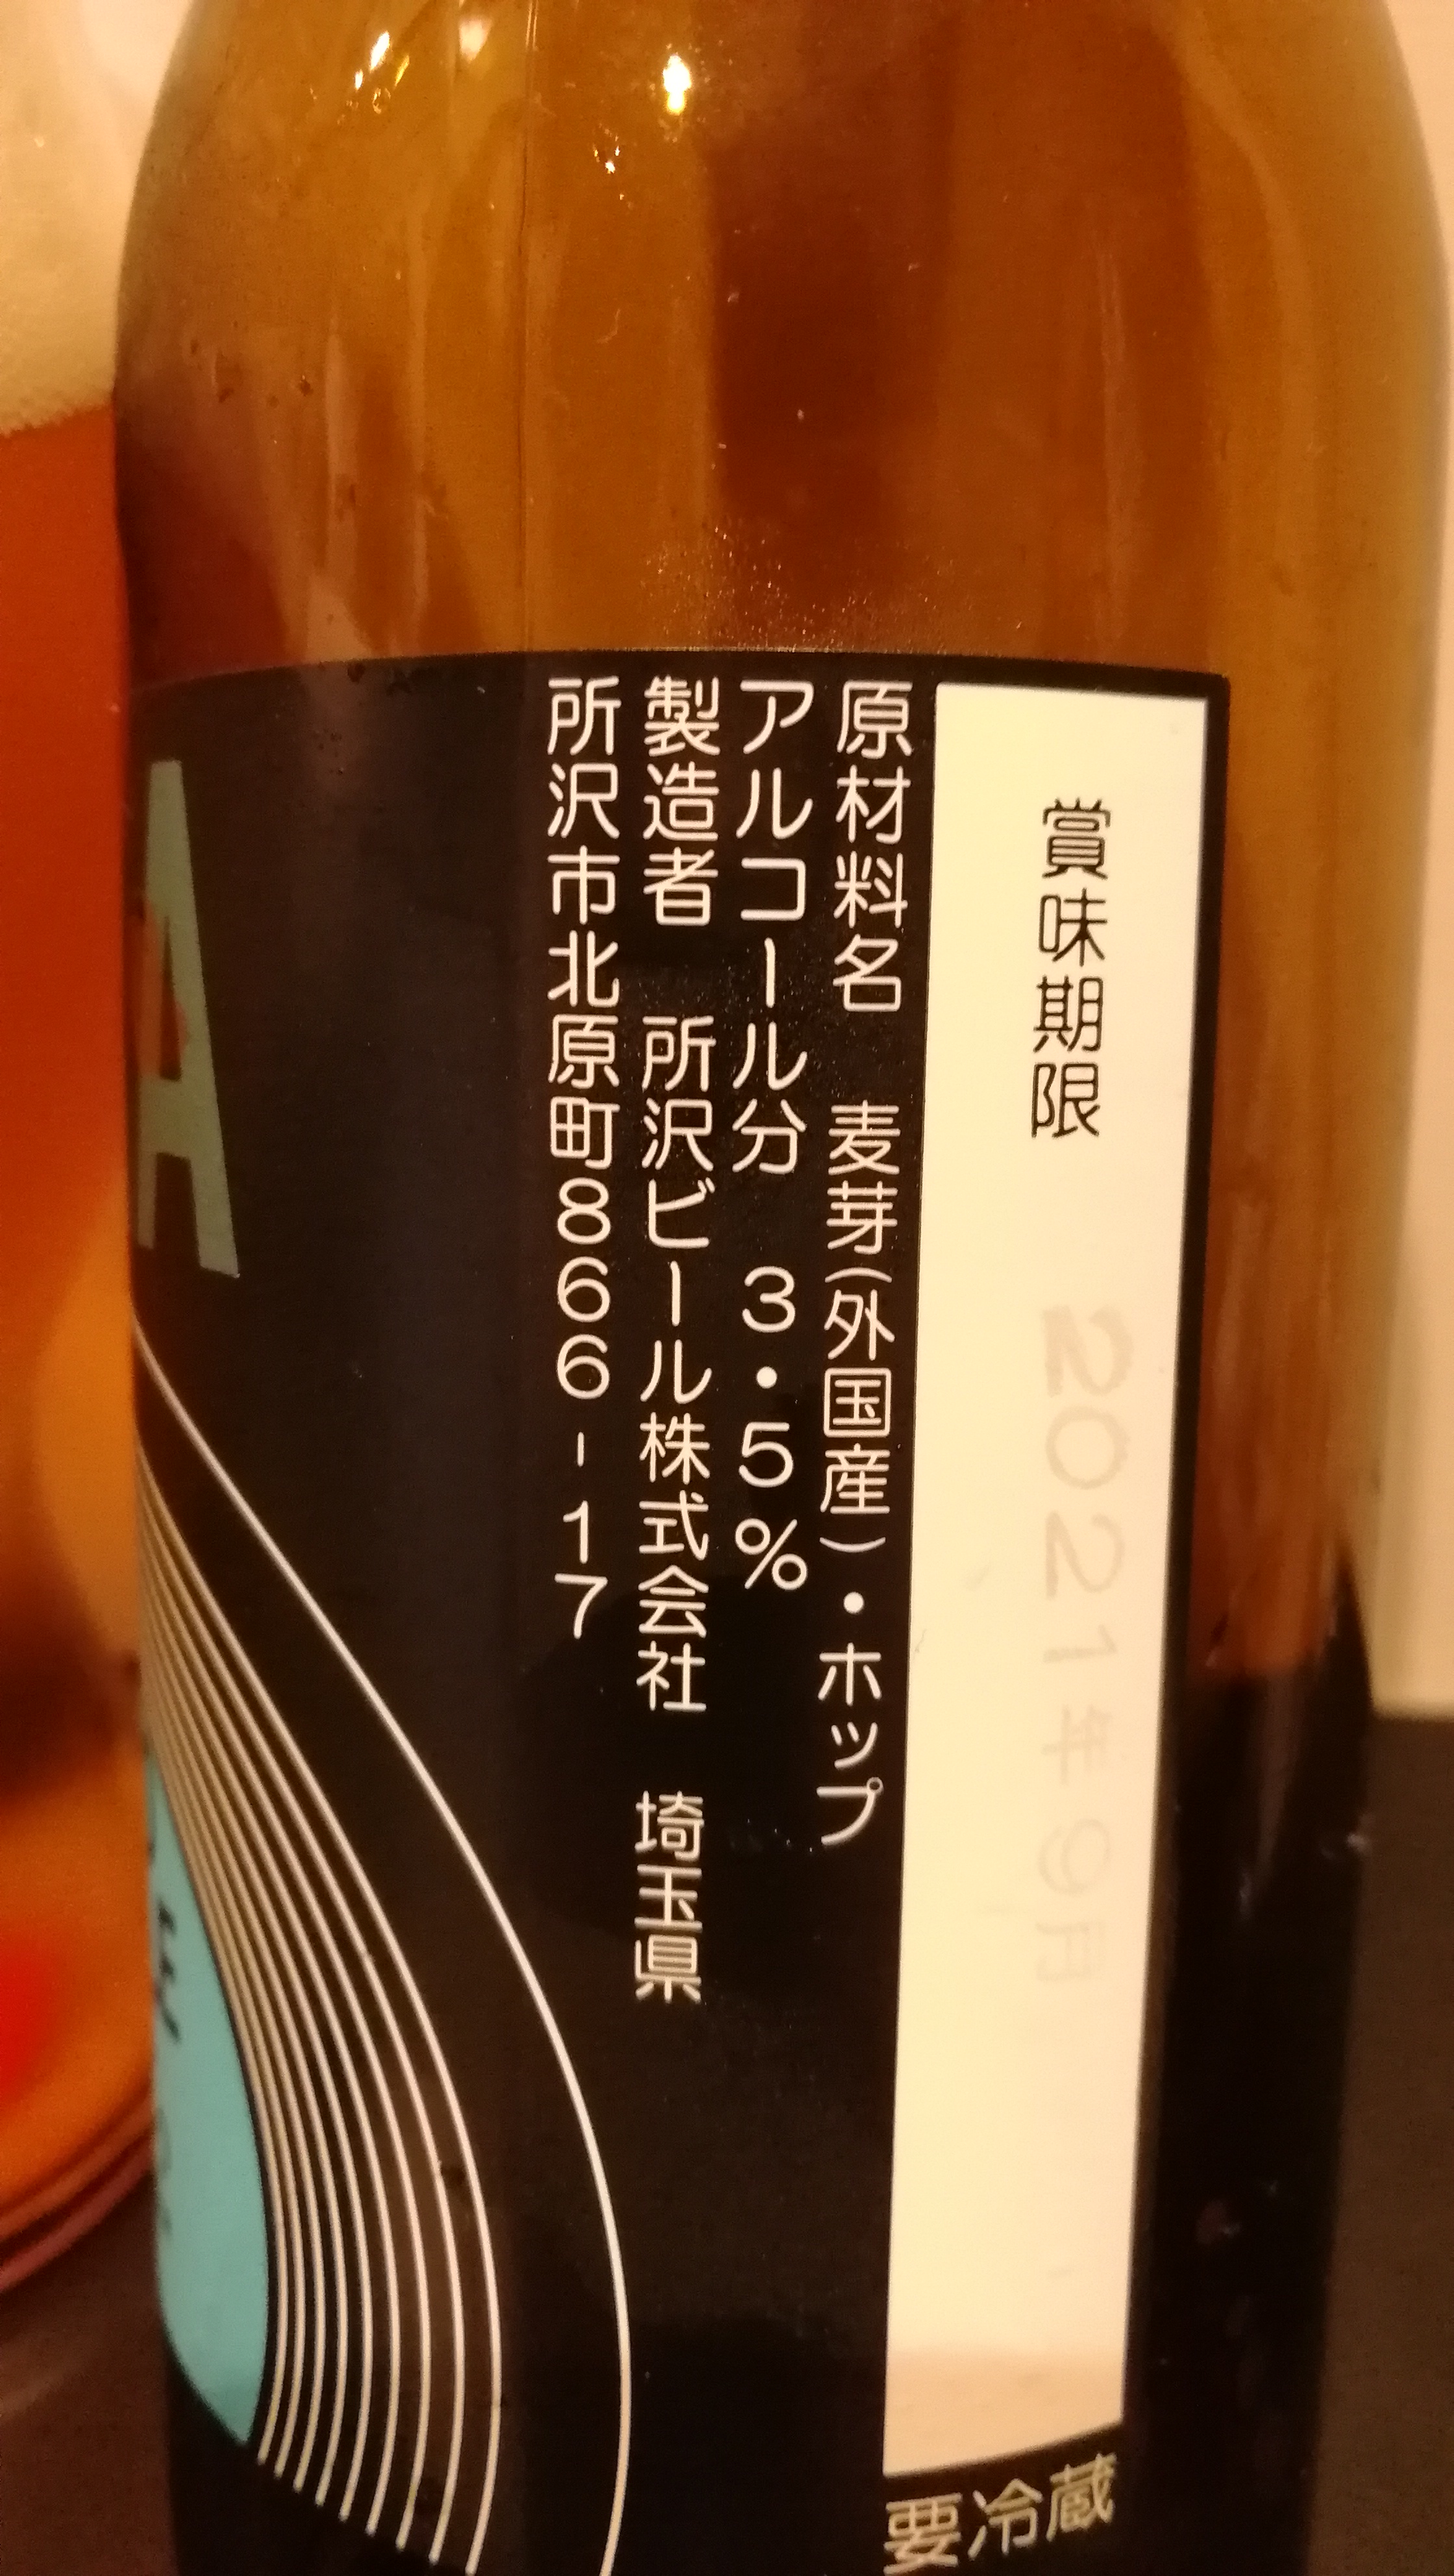 埼玉,所沢ビール株式会社,SORASESSION-SMOKEDALE